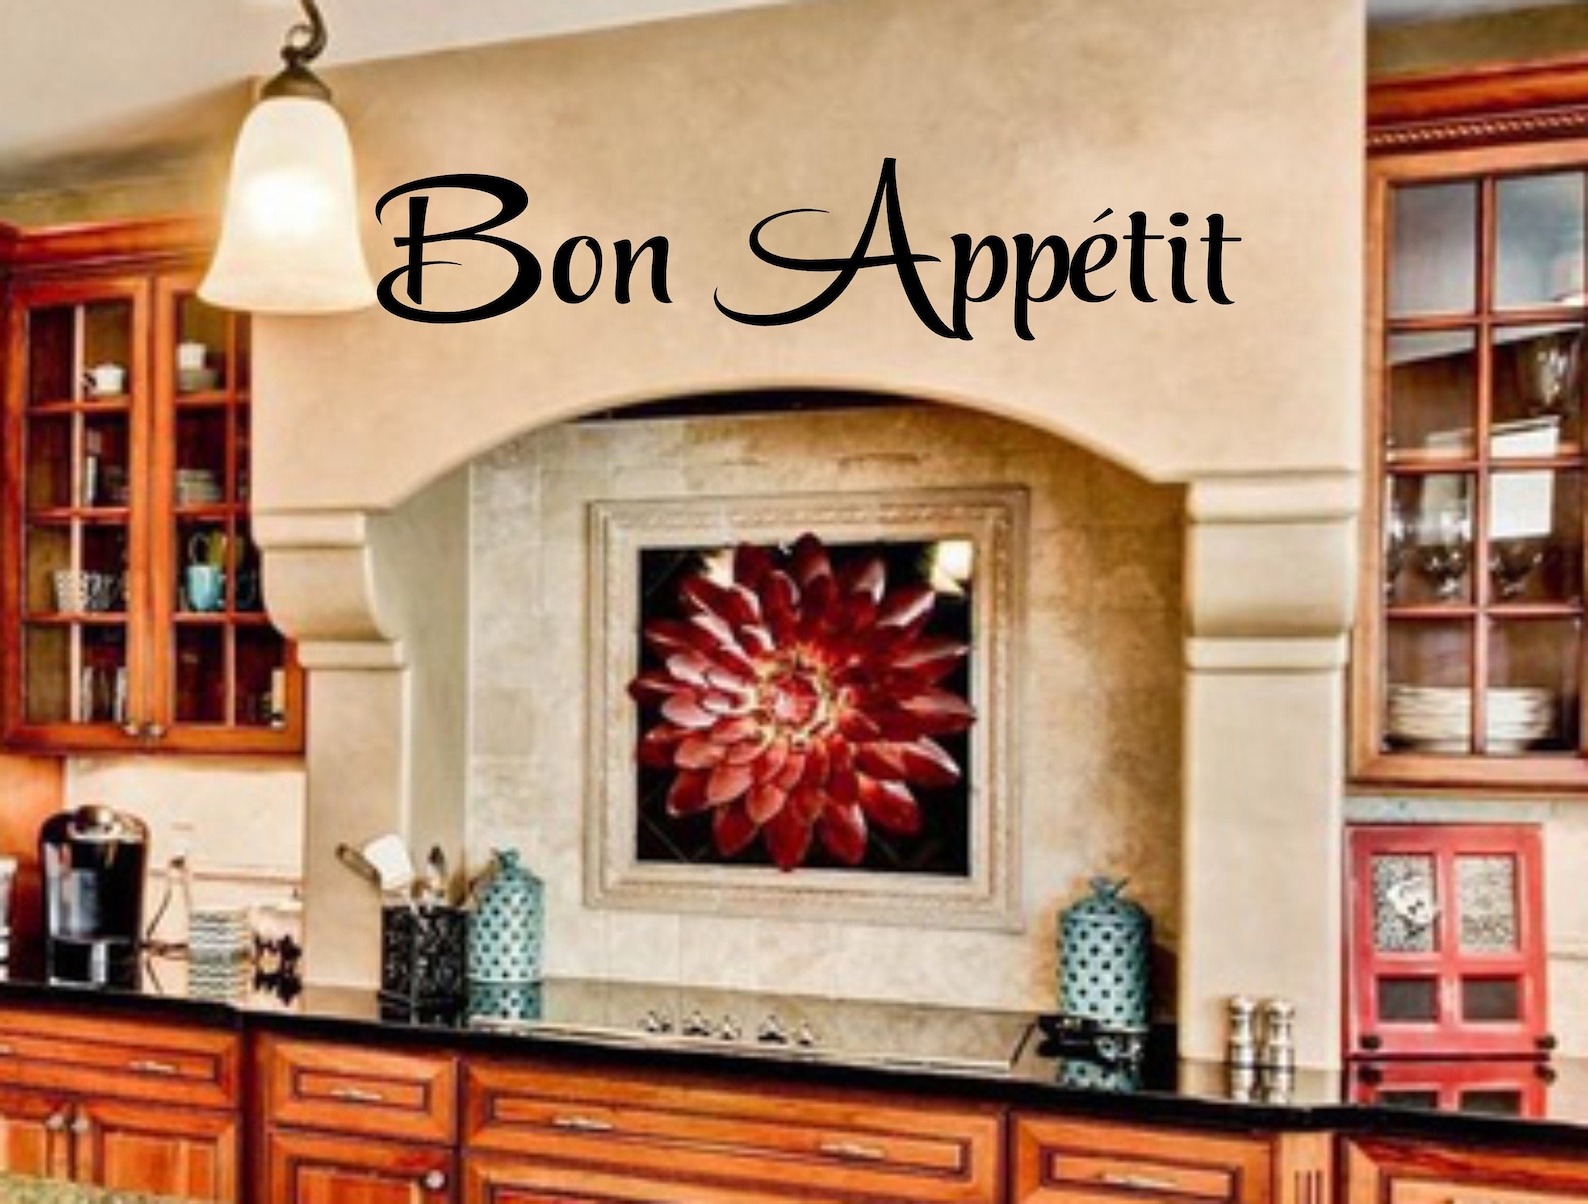 kitchen wall decal bon appetite